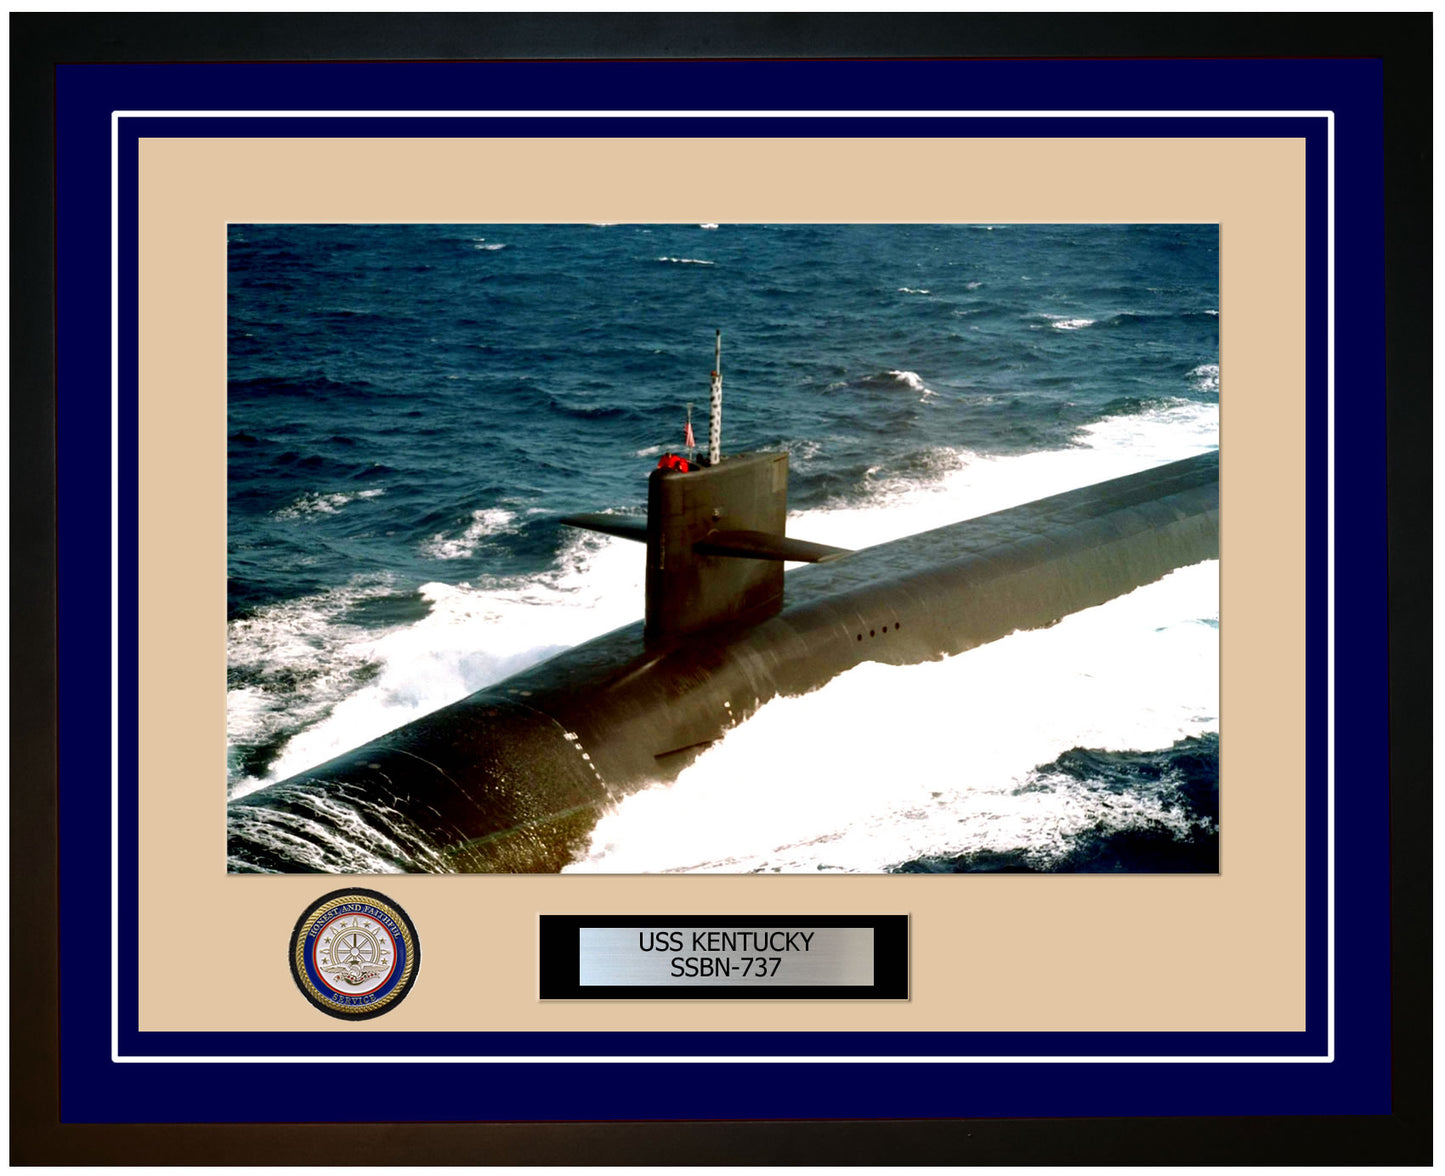 USS Kentucky SSBN-737 Framed Navy Ship Photo Blue